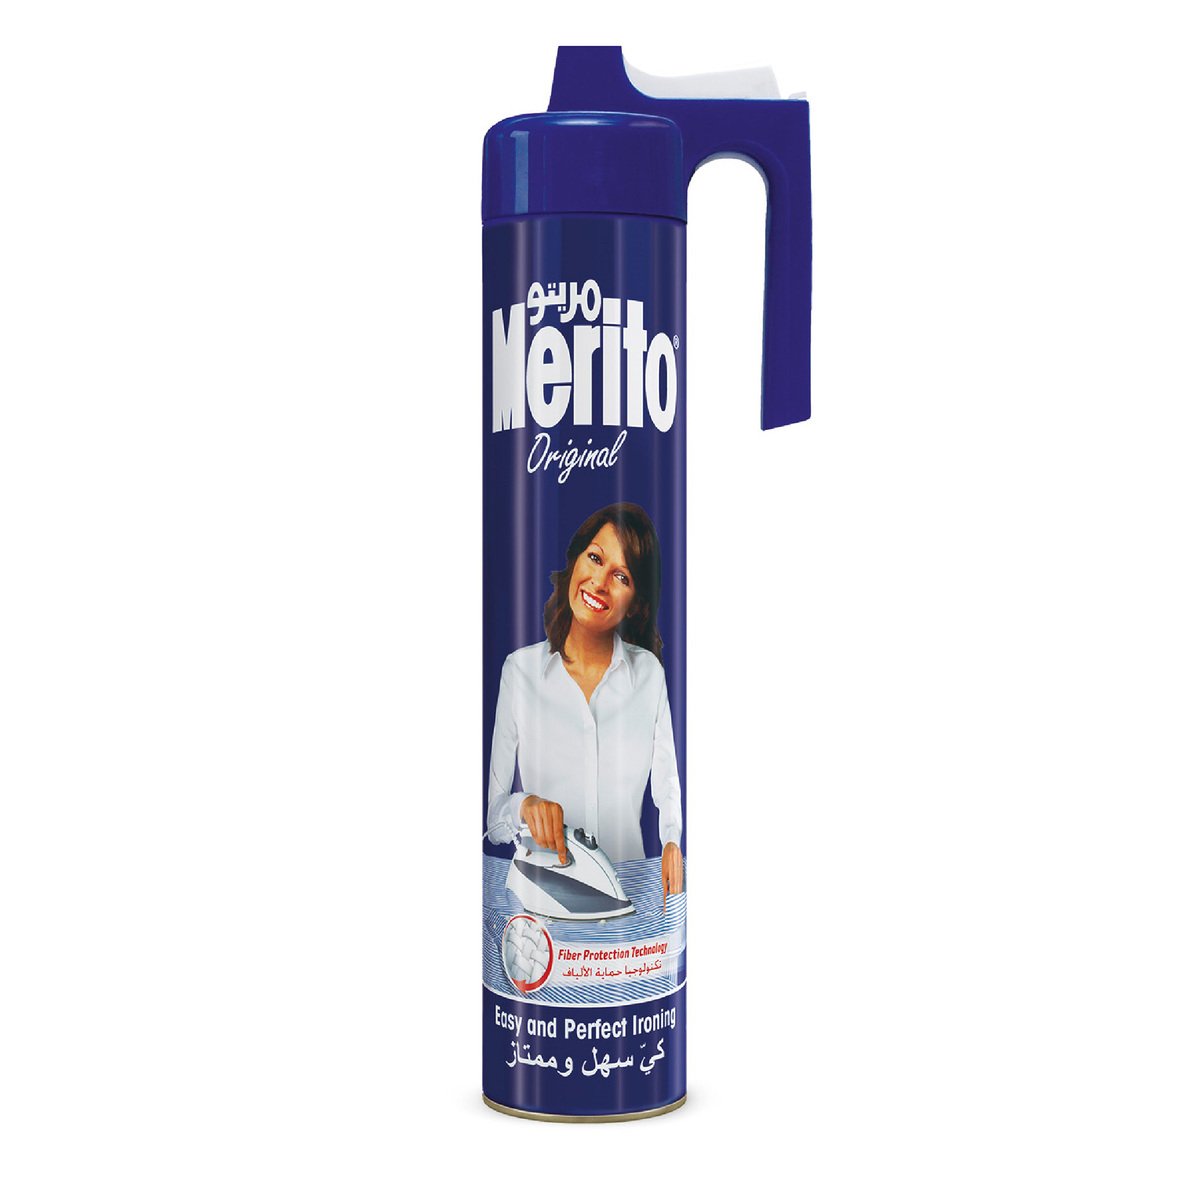 Merito Spray Starch Original 500ml